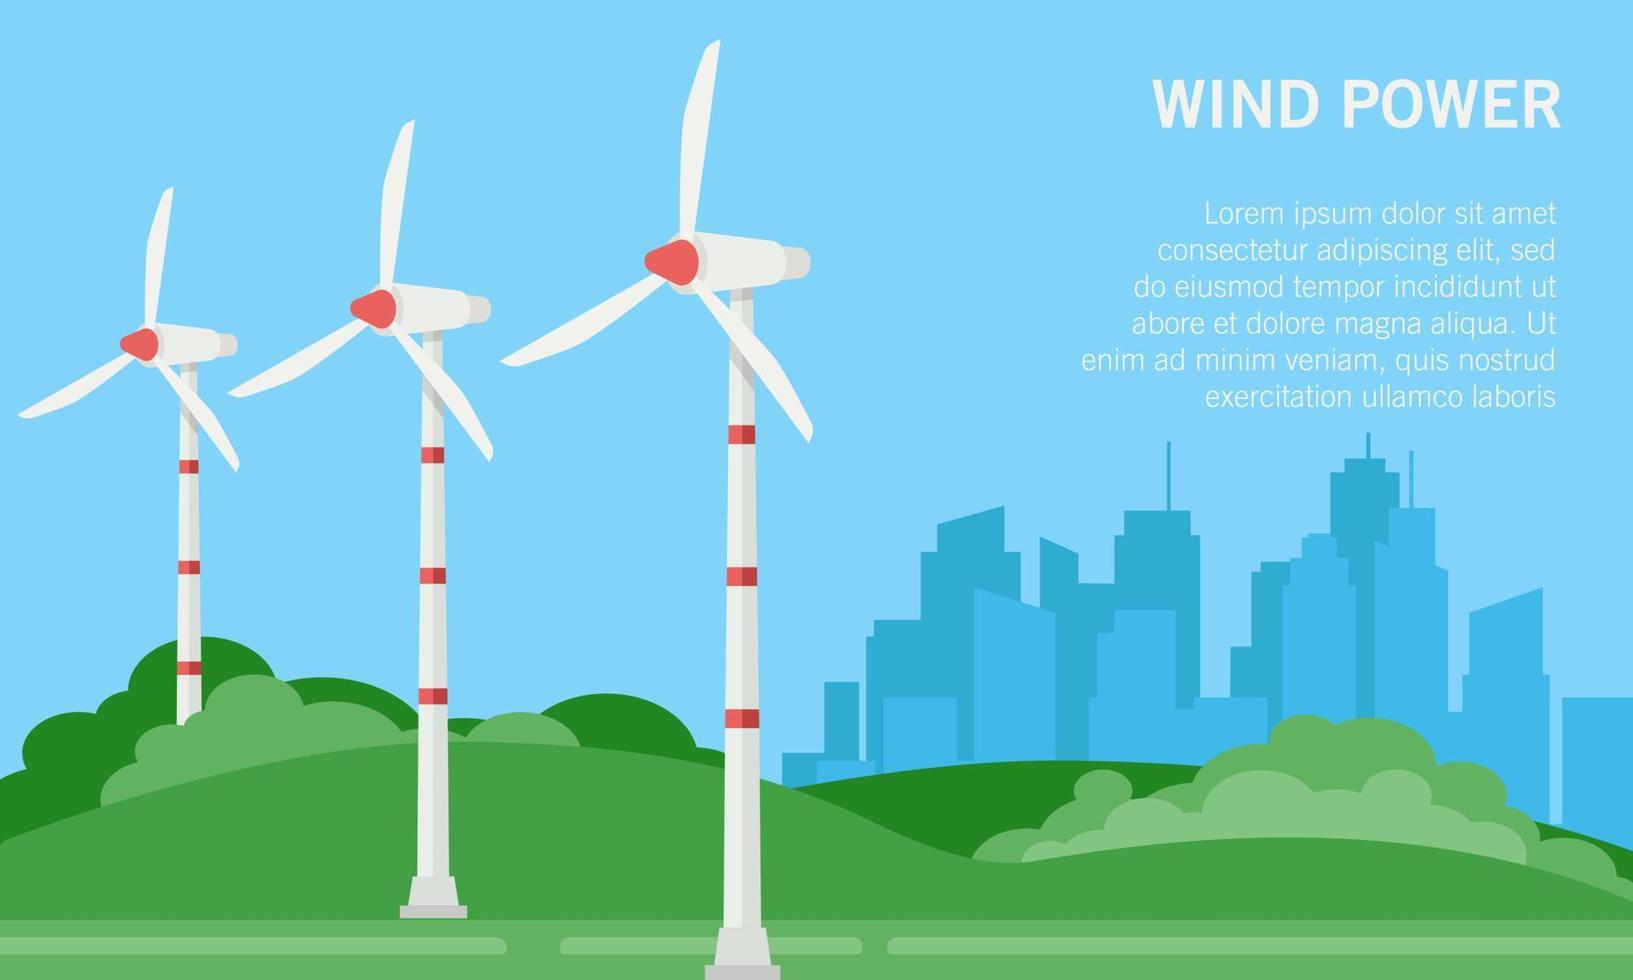 platt vektor illustration av en vindkraftpark. lämplig för designelementet i kampanjaffischen och webbplatsbakgrunden för förnybar och miljövänlig energi.